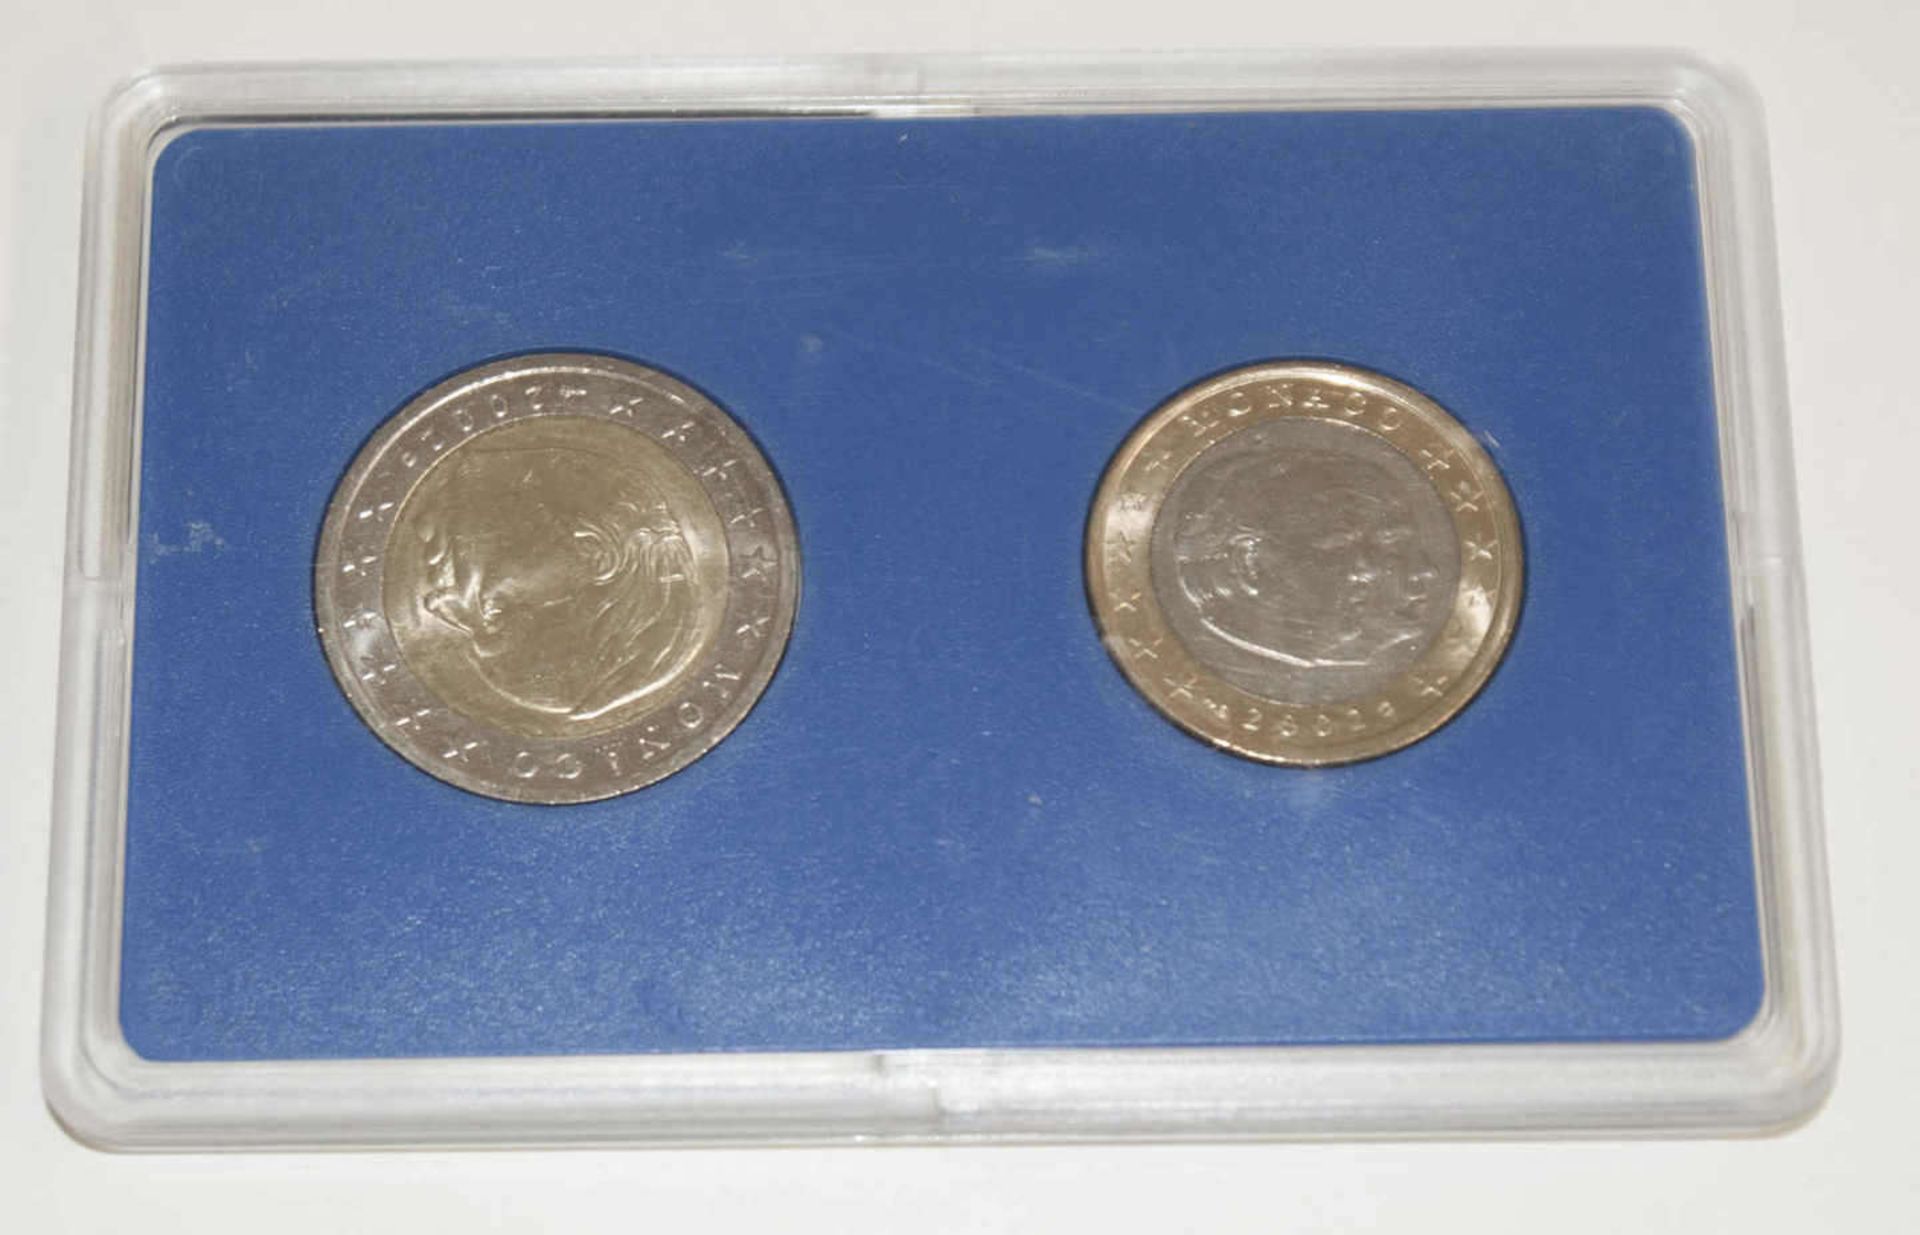 Monaco 2002, 1 und 2 Euro Münze im Original Blister von 2002Monaco 2002, 1 and 2 Euro coin in - Image 2 of 2